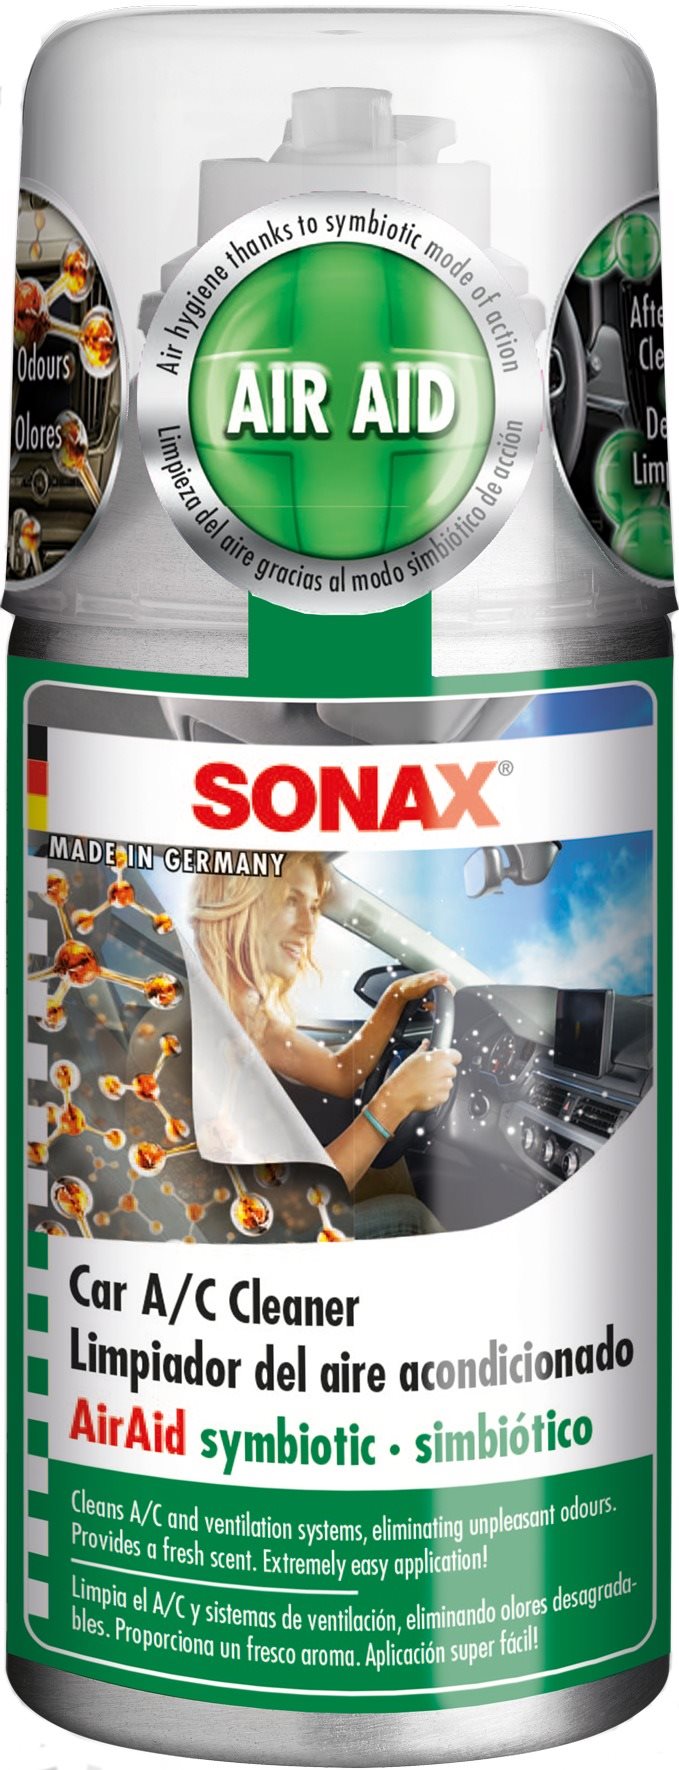 SONAX klíma tisztító spray 100ml